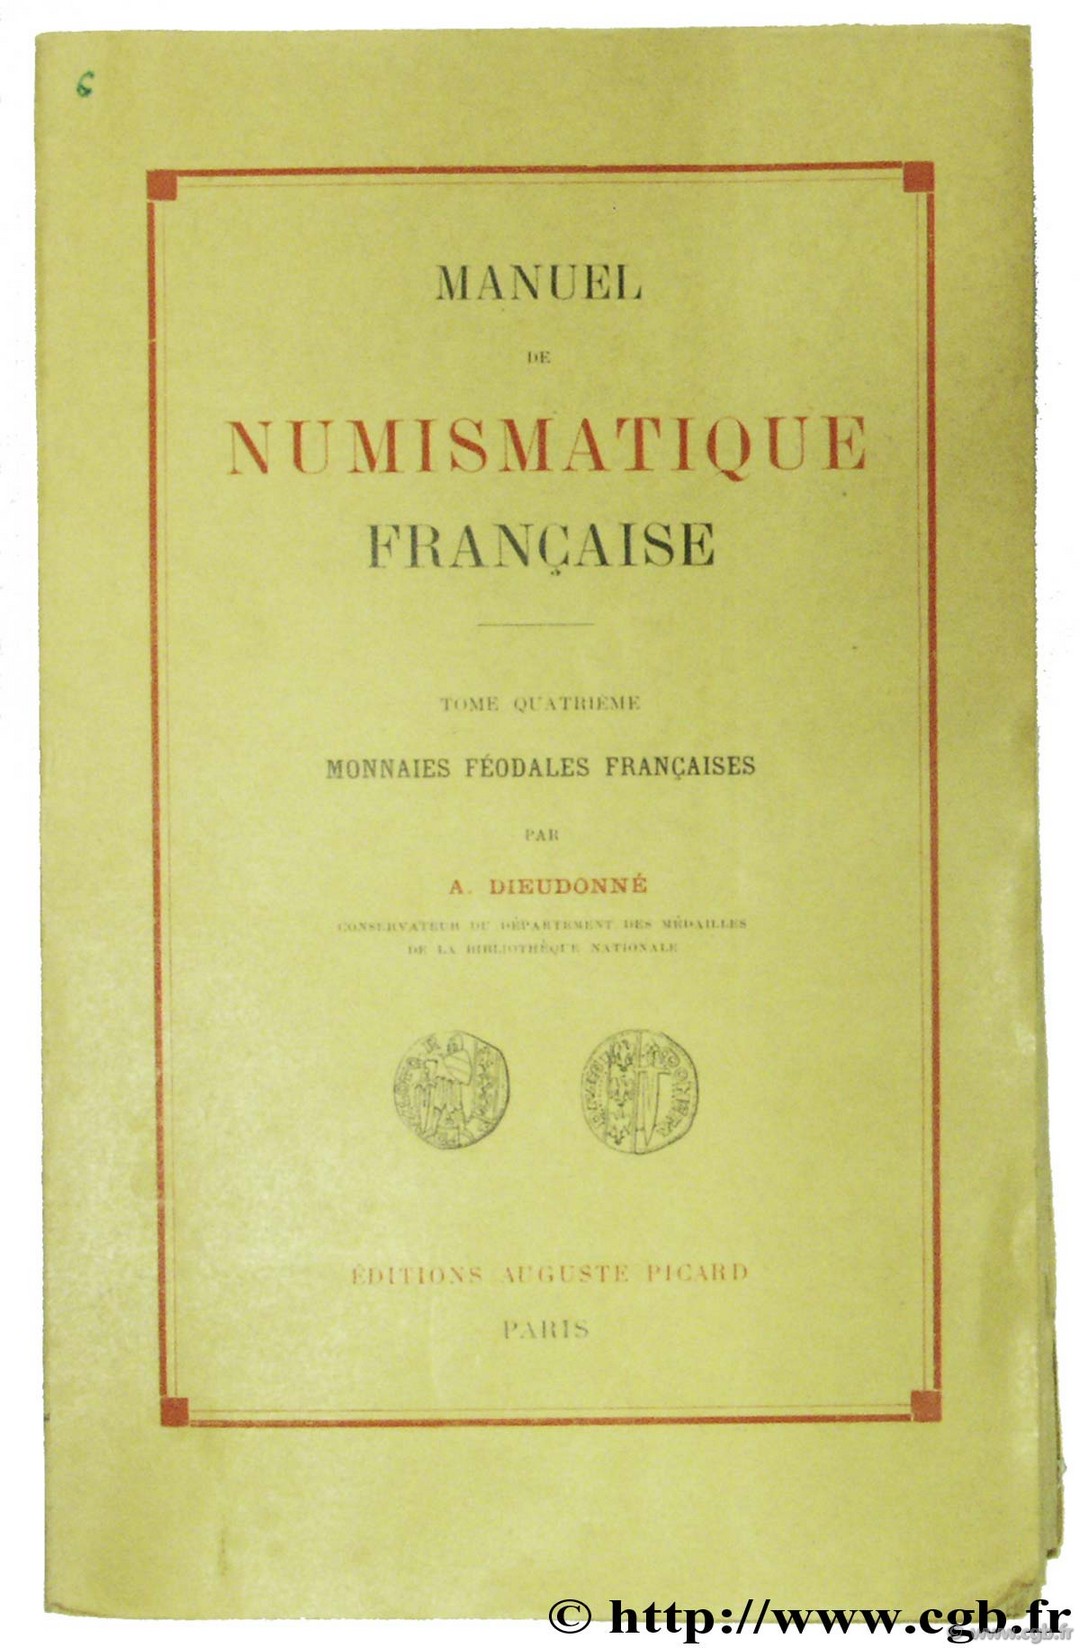 Manuel de numismatique française BLANCHET A., DIEUDONNÉ A.